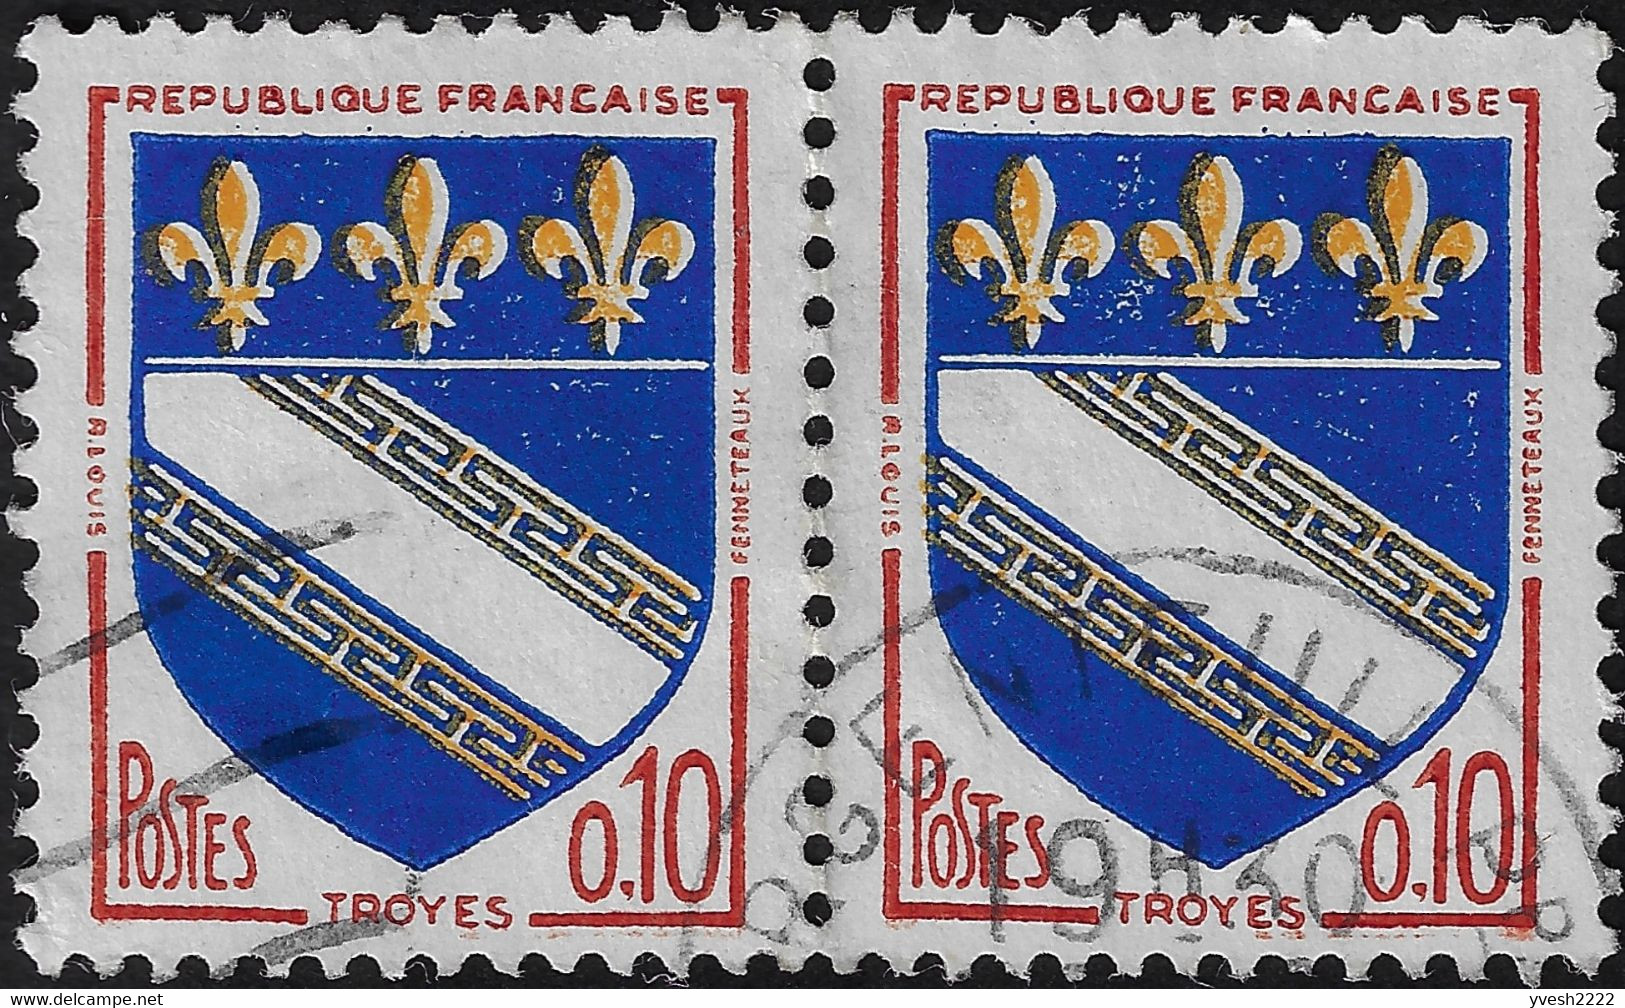 France 1962 Y&T 1353 et 1353b. Inscriptions en brun et rouge, jaune clair et foncé, jaune déplacé, bleu et bleu-noir